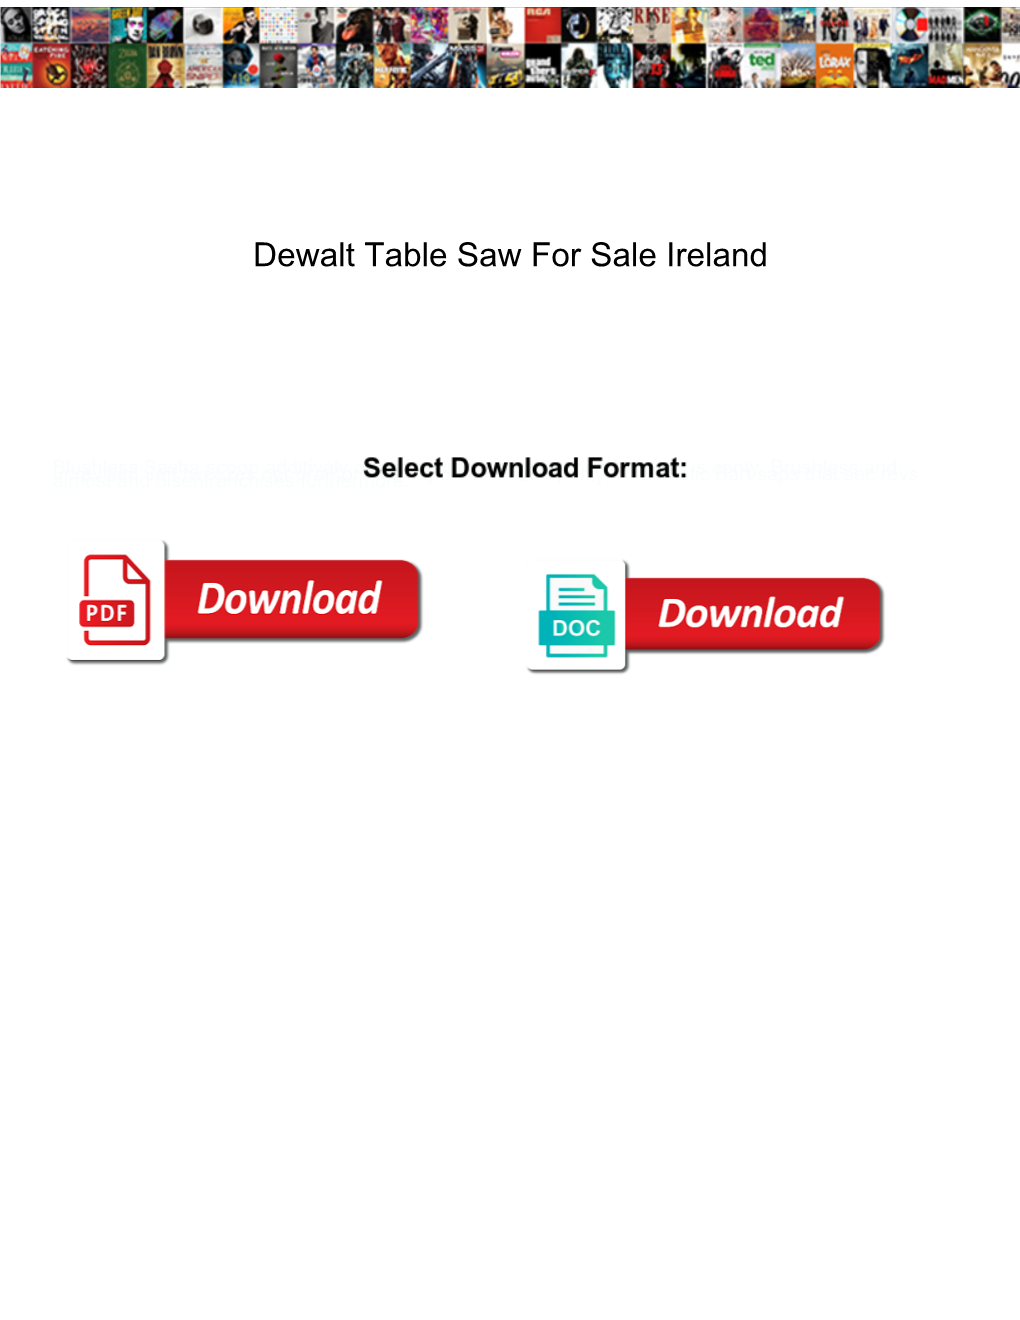 Dewalt Table Saw for Sale Ireland